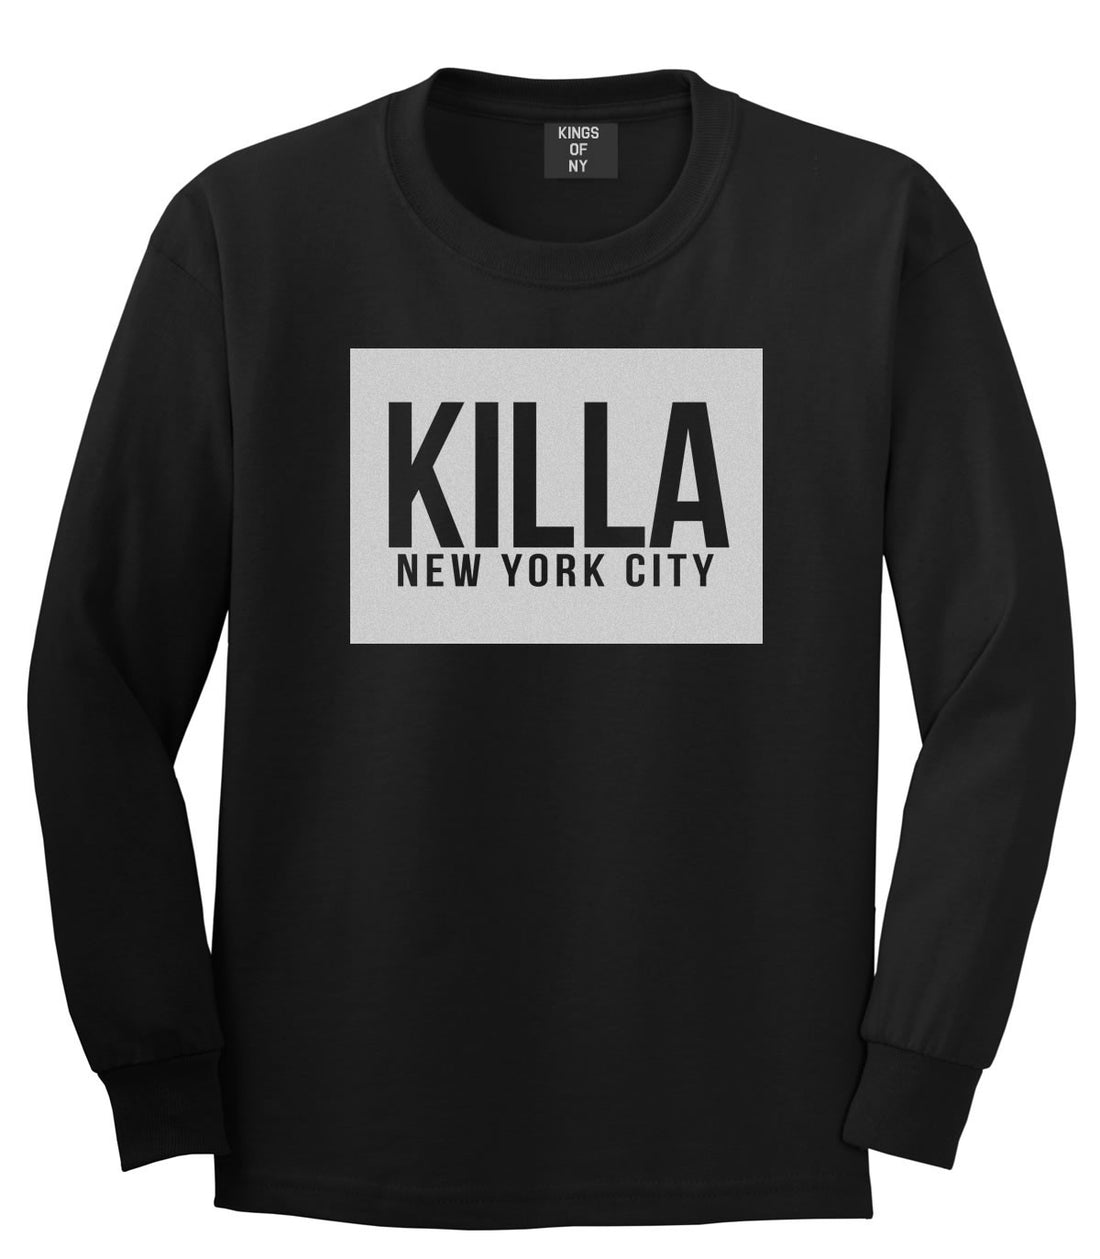 Killa New York City Harlem Long Sleeve T-Shirt in Black by Kings Of NY